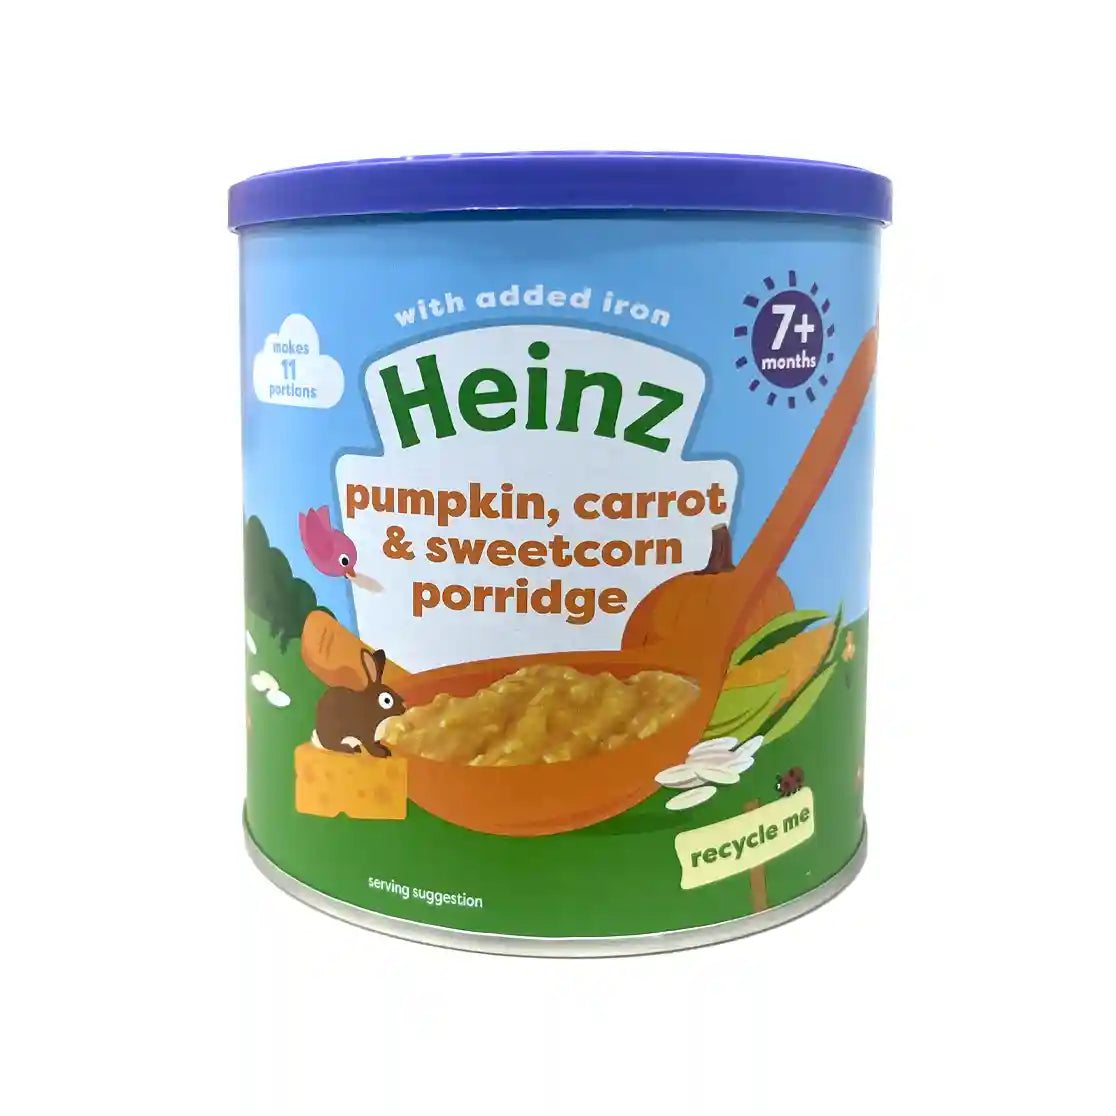 Buy Heinz Pumpkin, Carrot & Sweetcorn Porridge for your Baby - 200gms Online in India at uyyaala.com